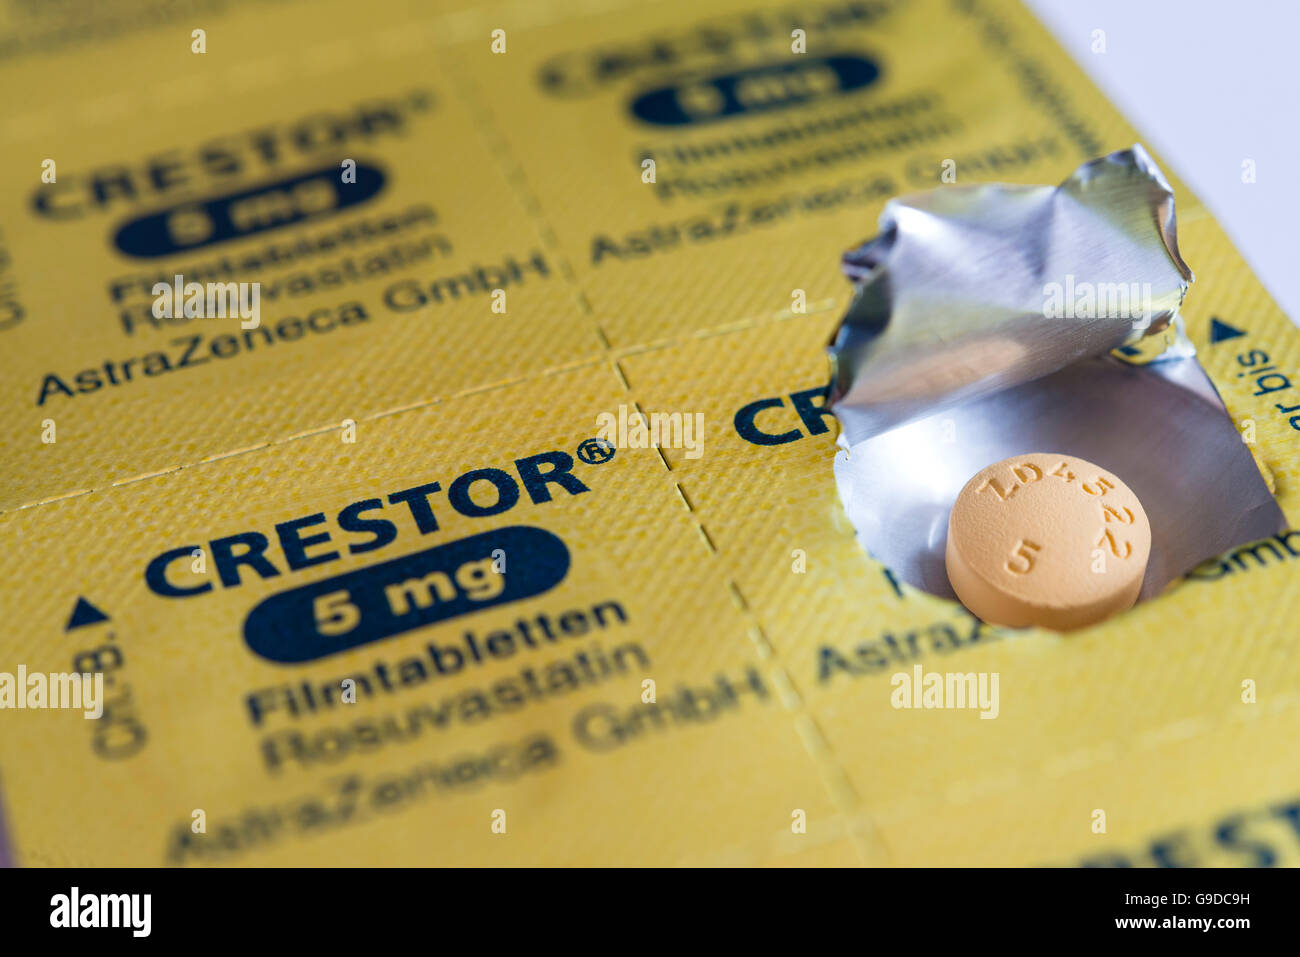 Folie-Blister-Packung für Crestor gebrandmarkt Statine Cholesterin Pillen. Stockfoto